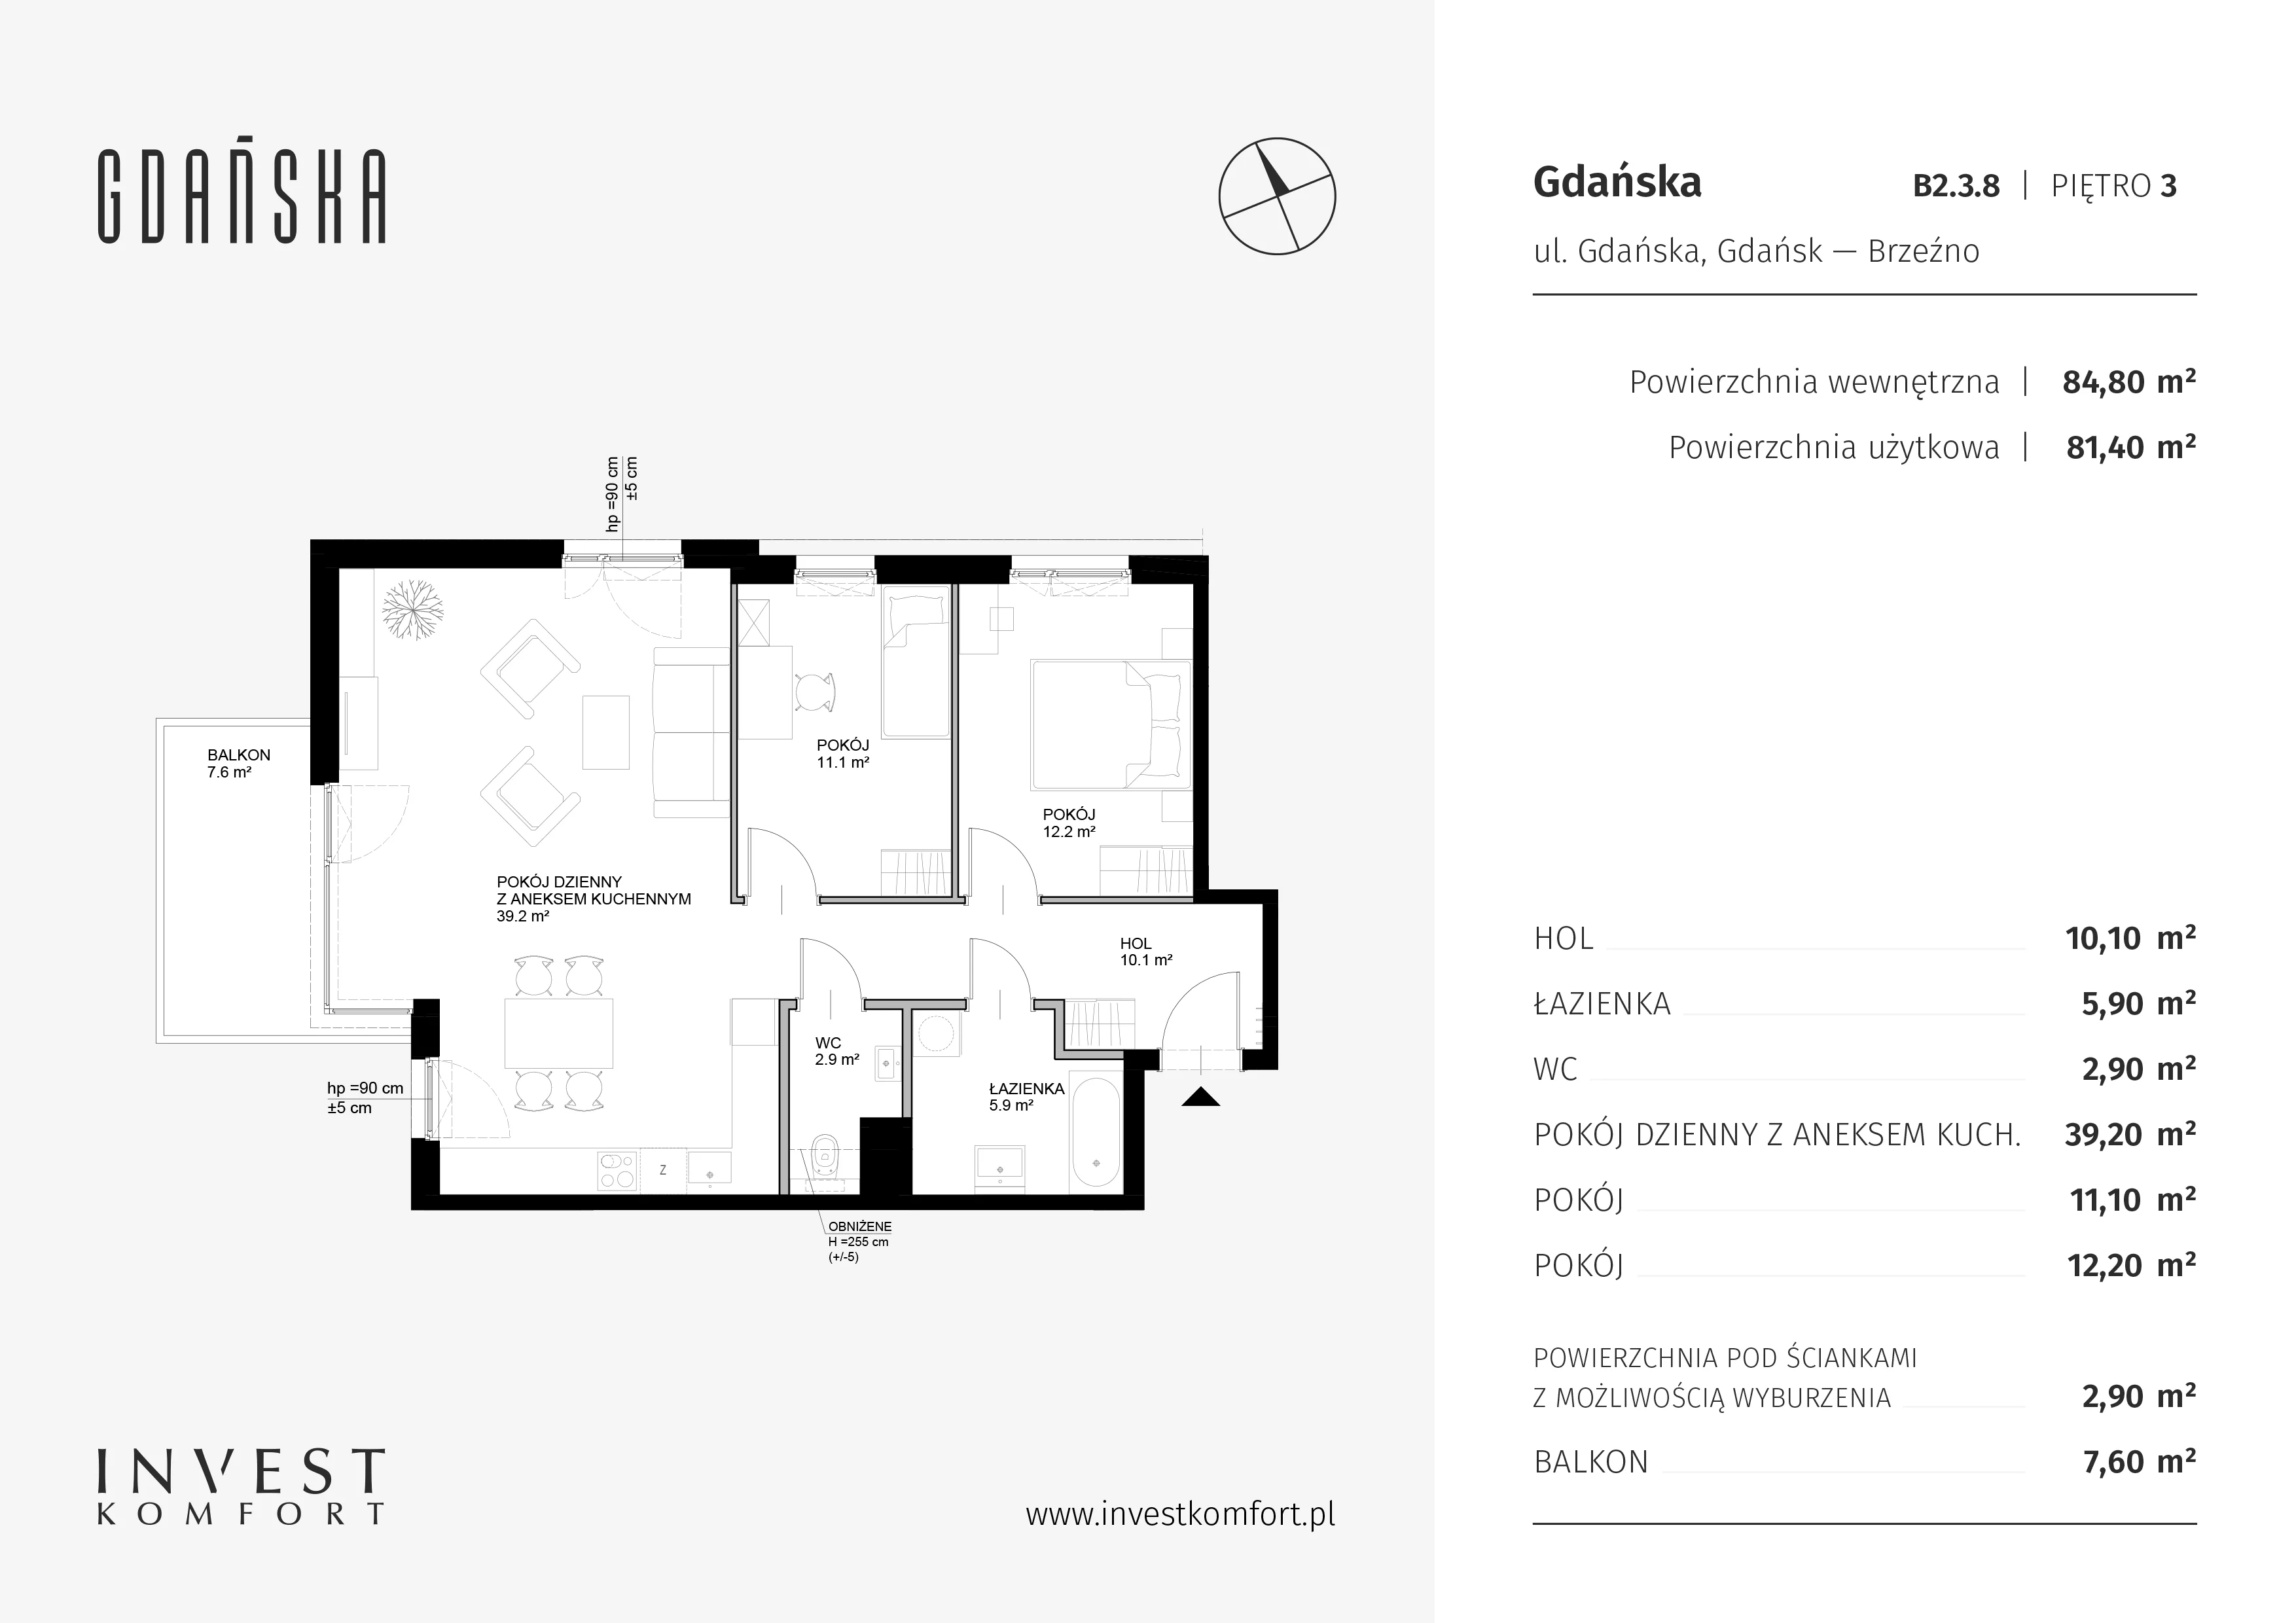 Mieszkanie 84,80 m², piętro 3, oferta nr B2.3.8, Gdańska, Gdańsk, Brzeźno, ul. Gdańska